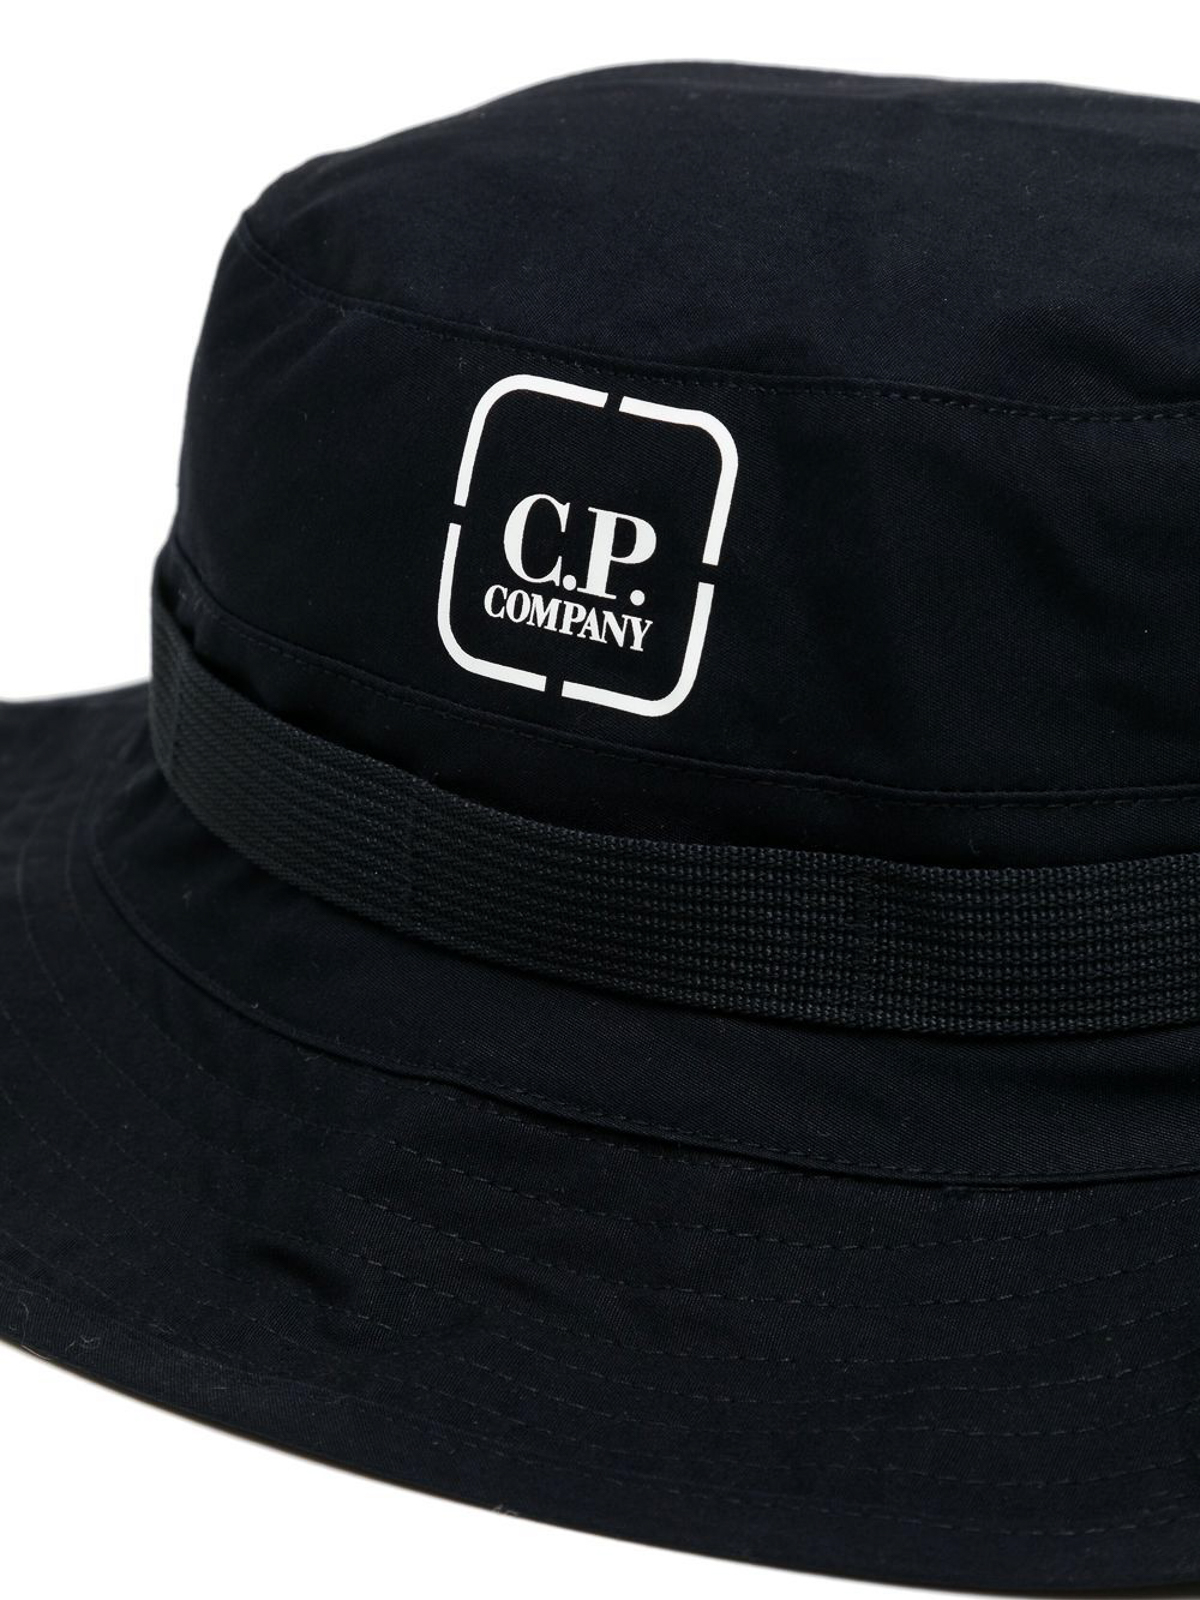 Hats & caps C.P. Company - Bucket hat - 14CMAC152A006450A888 | iKRIX.com